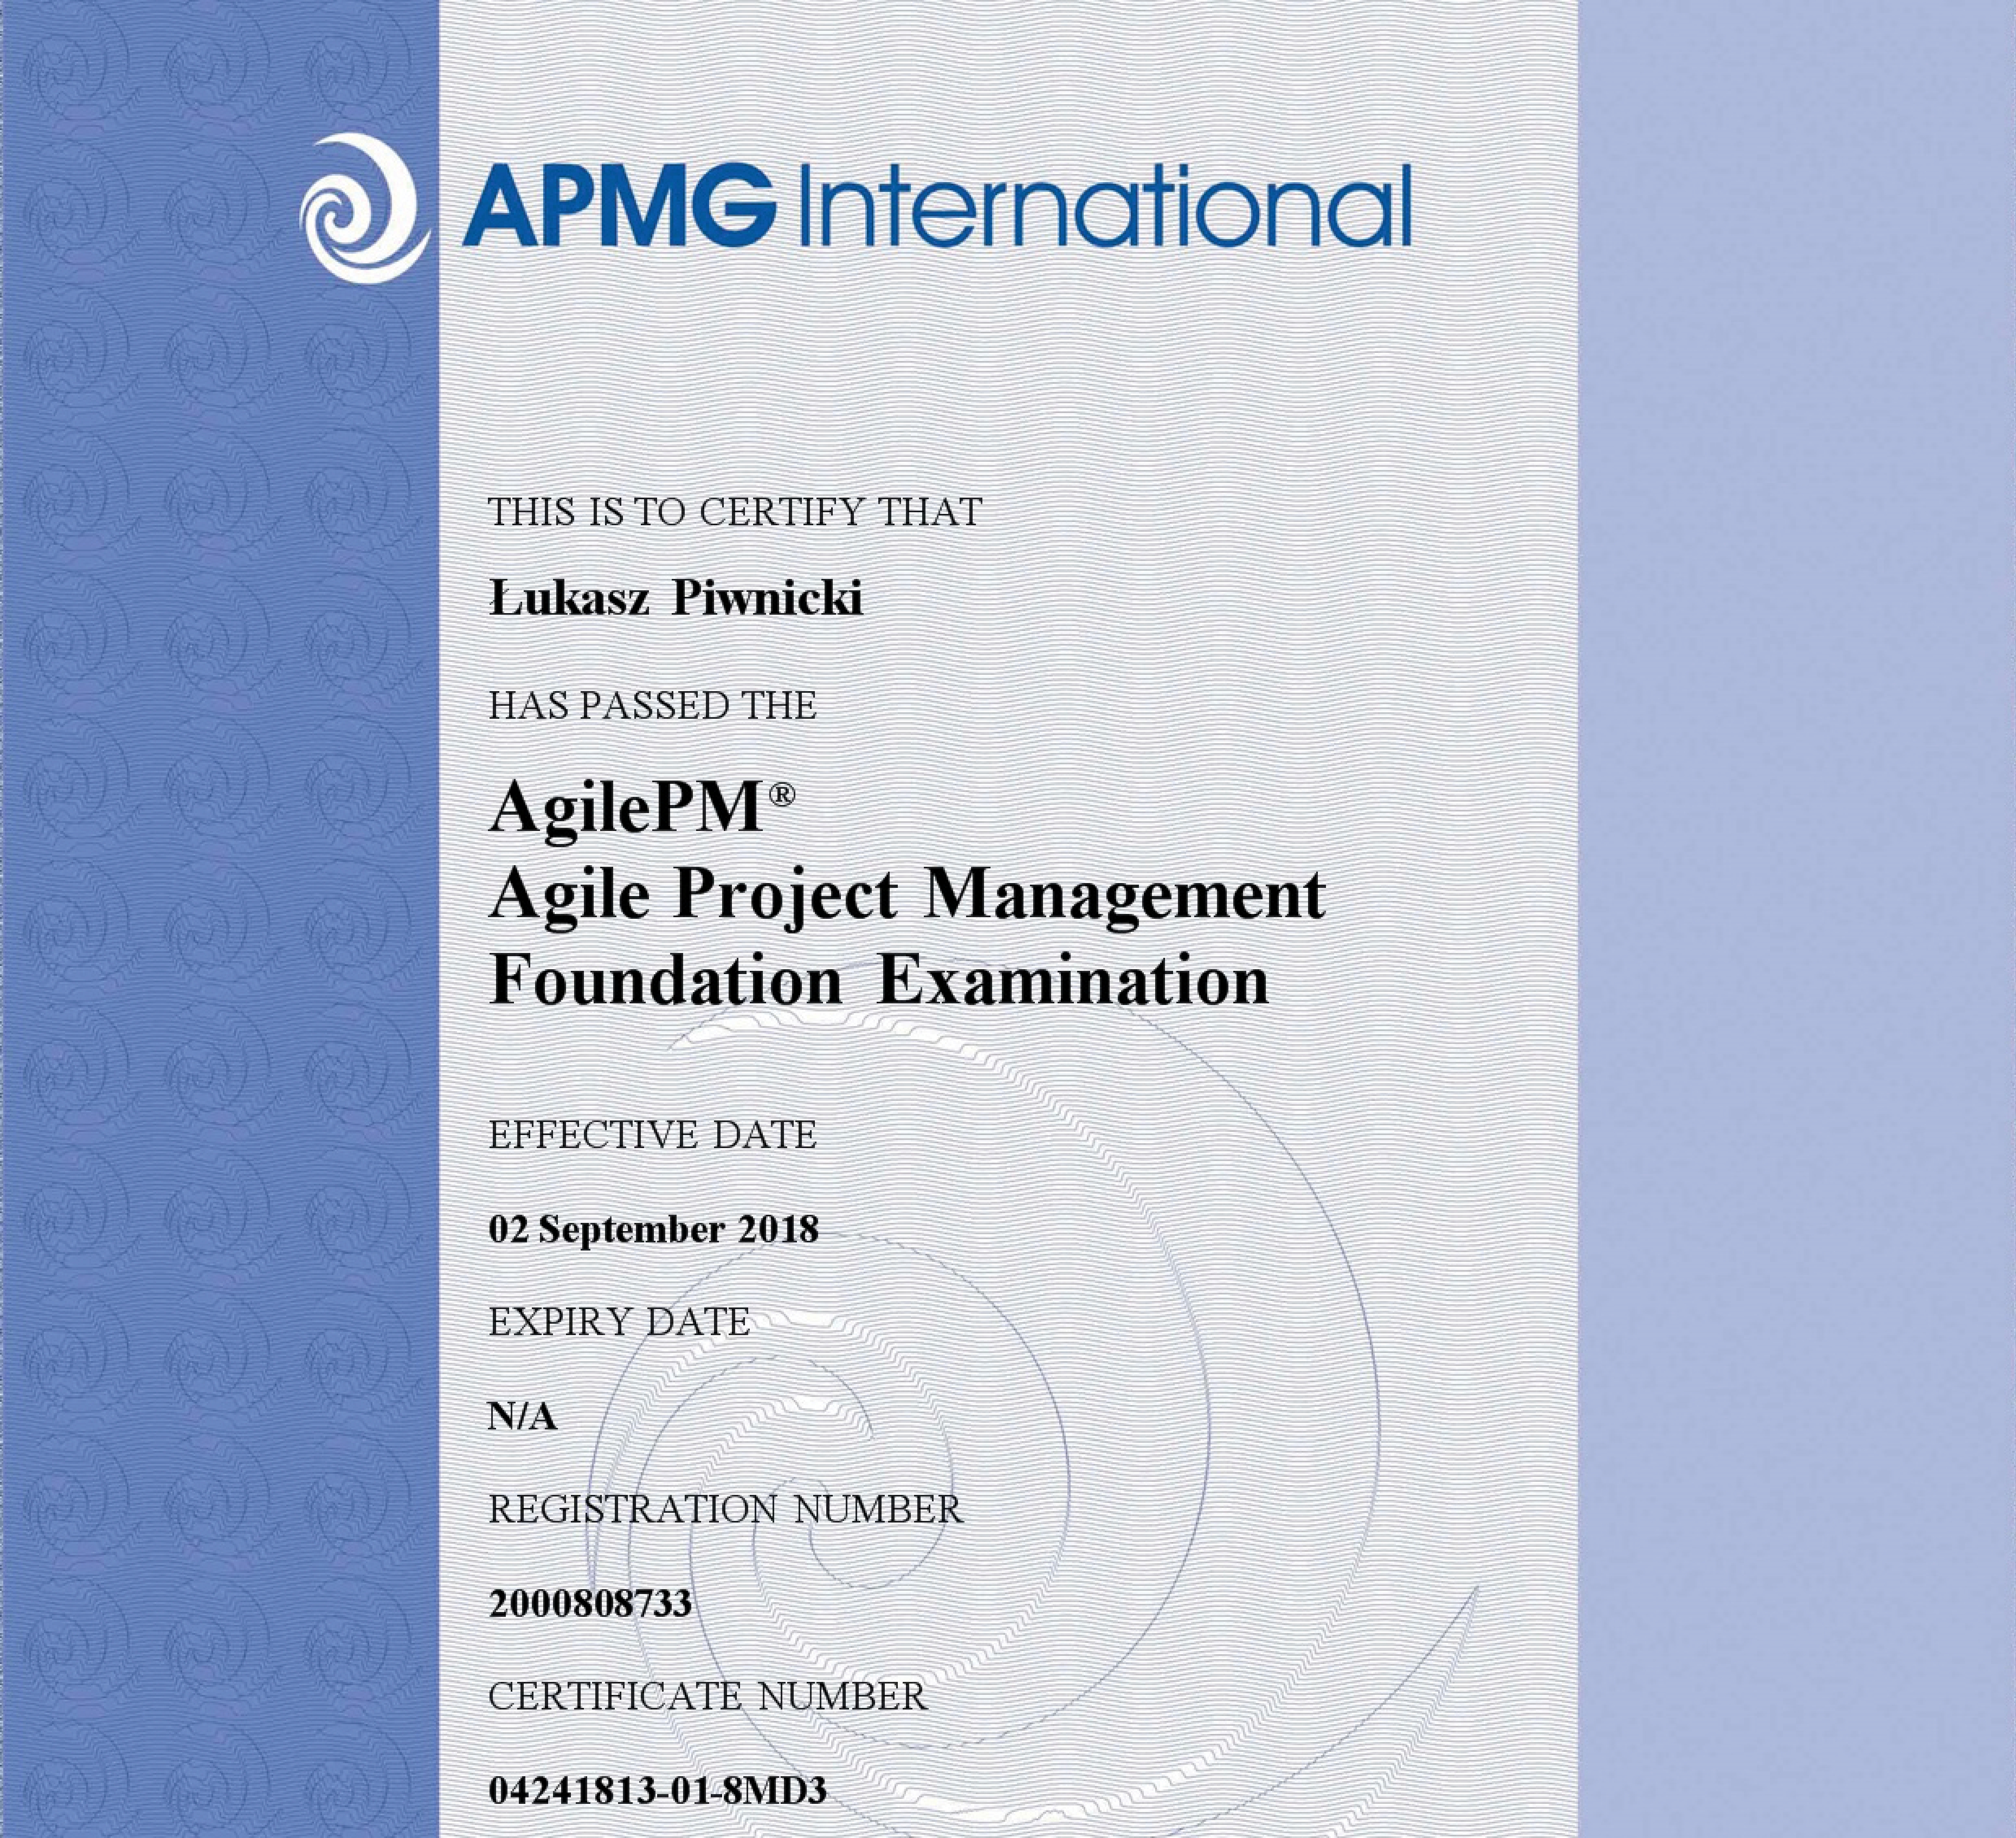 Zdobyliśmy certyfikat AgilePM® Foundation – APMG International